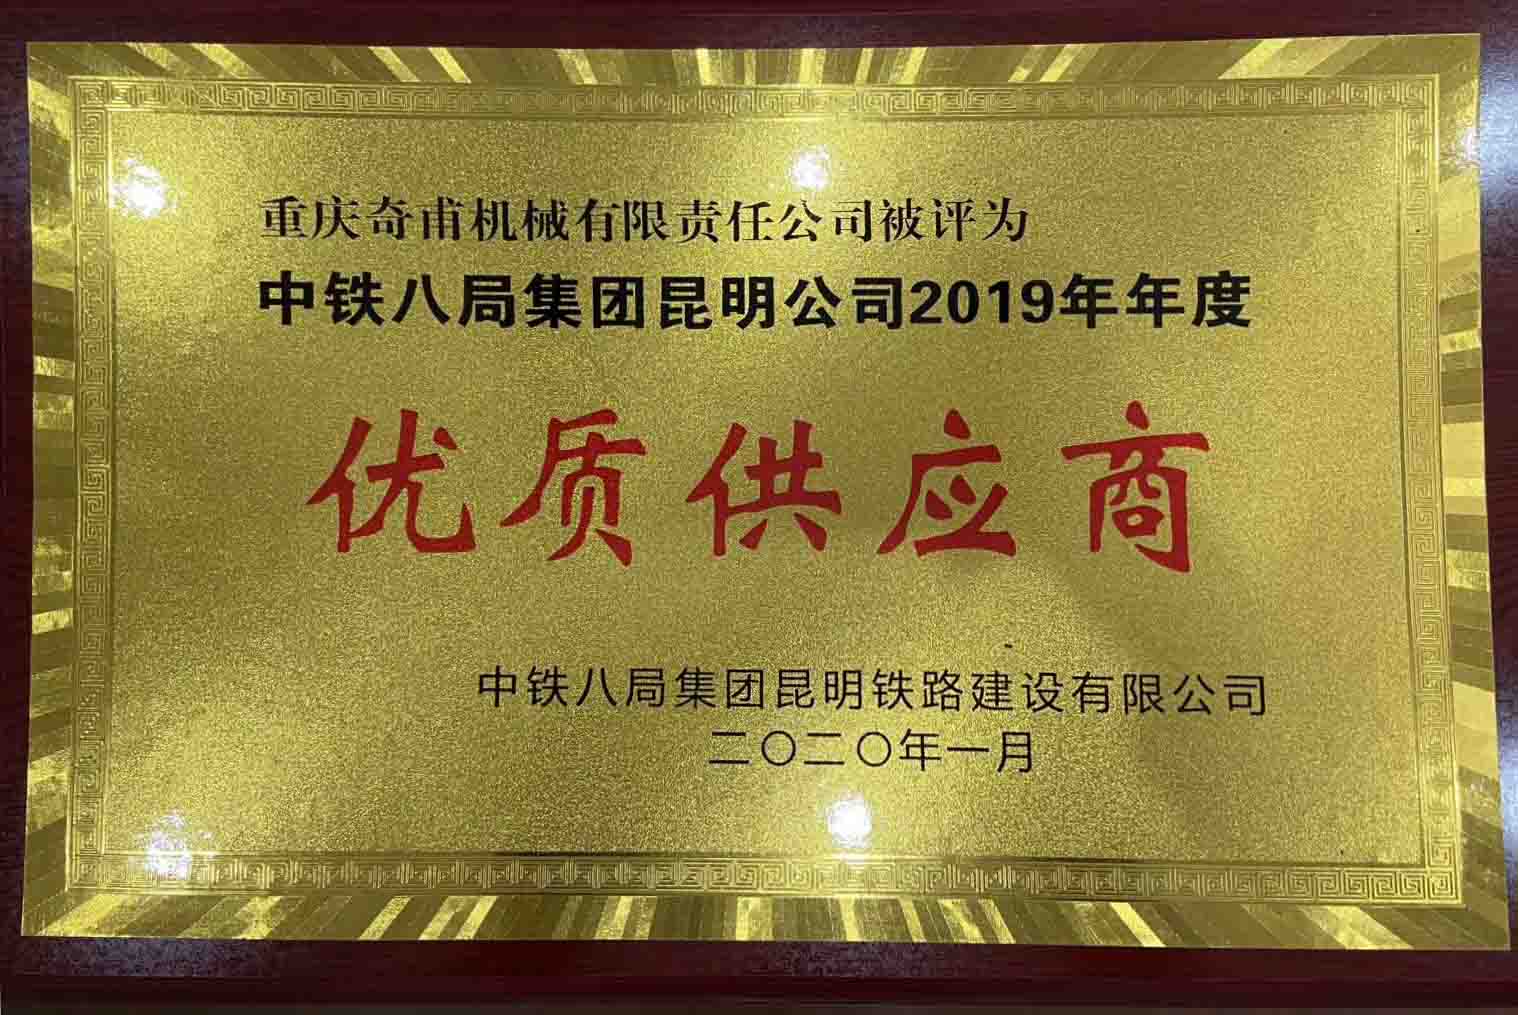 重庆奇甫机械有限责任公司被评为中铁八局集团昆明公司2019年年度优质供应商